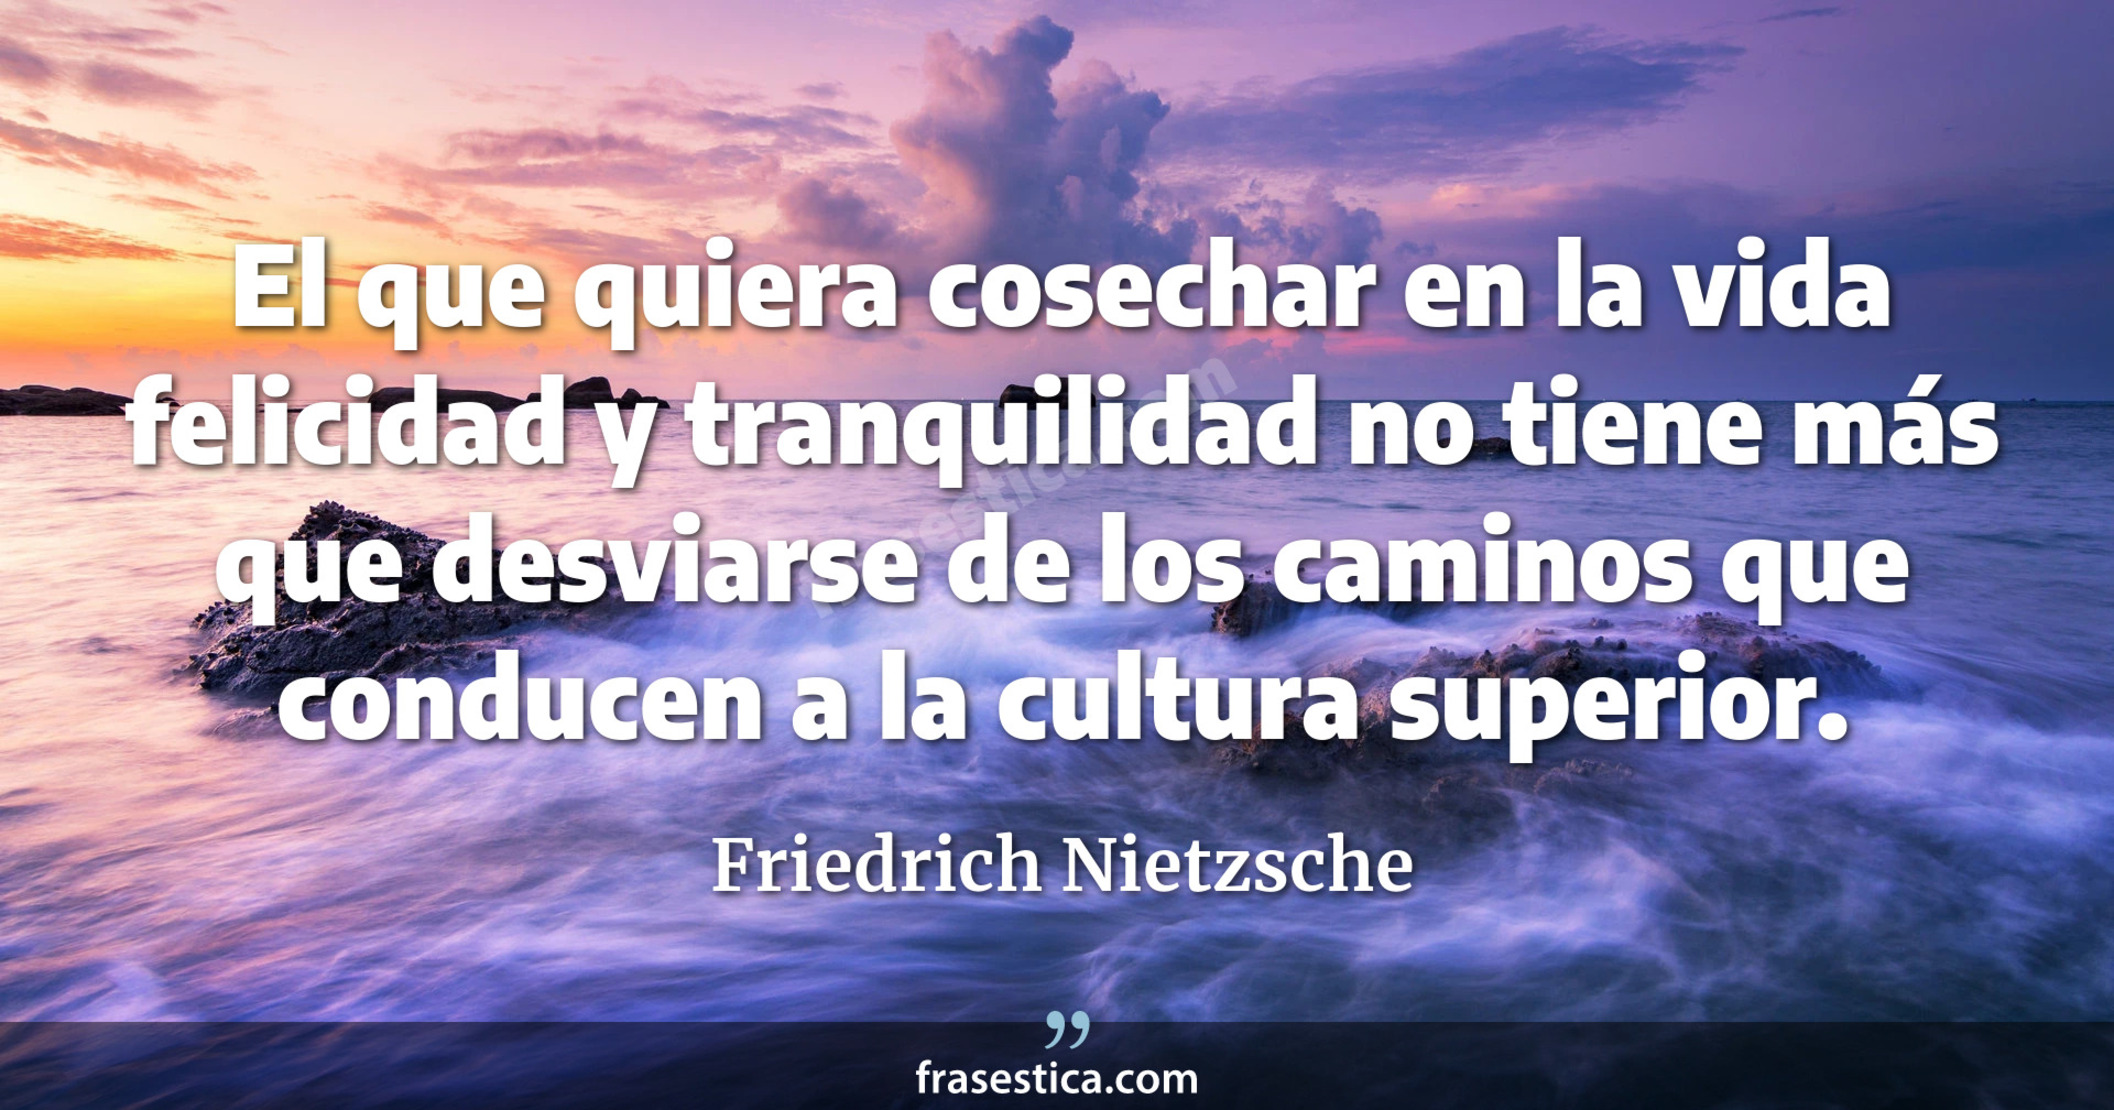 El que quiera cosechar en la vida felicidad y tranquilidad no tiene más que desviarse de los caminos que conducen a la cultura superior. - Friedrich Nietzsche